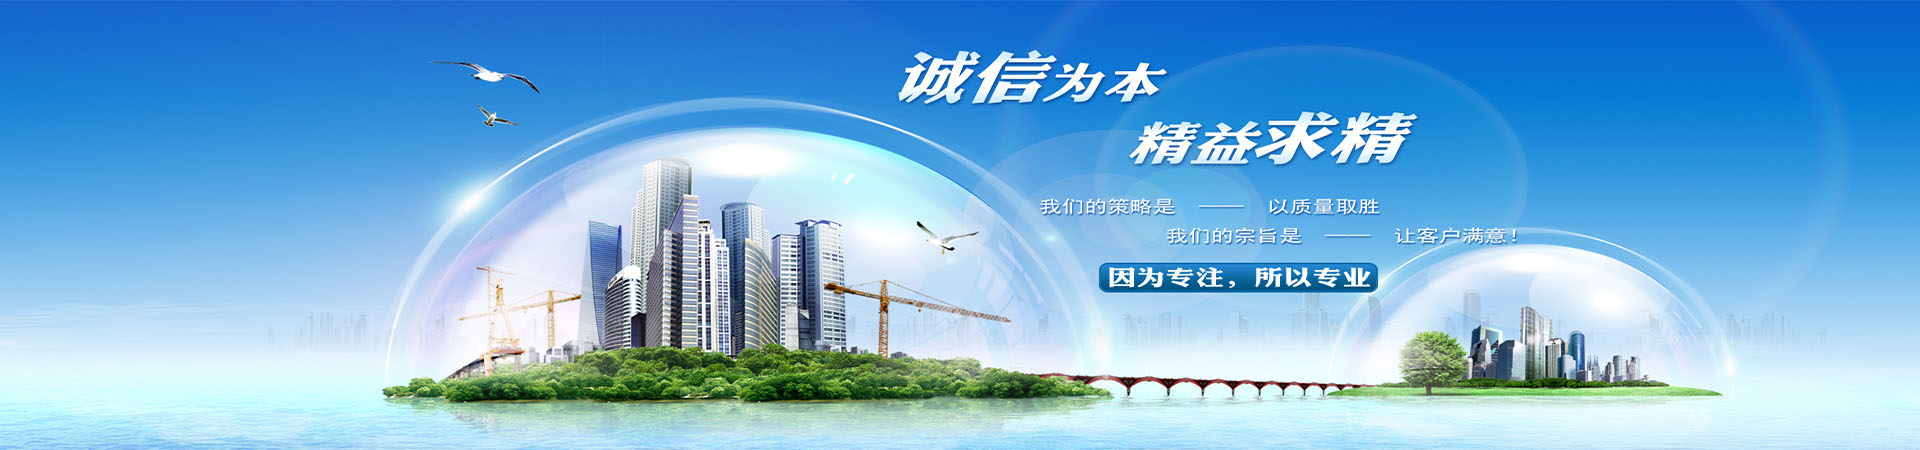 上海到三门峡物流托运、本地上海到三门峡物流托运、、上海到三门峡物流托运